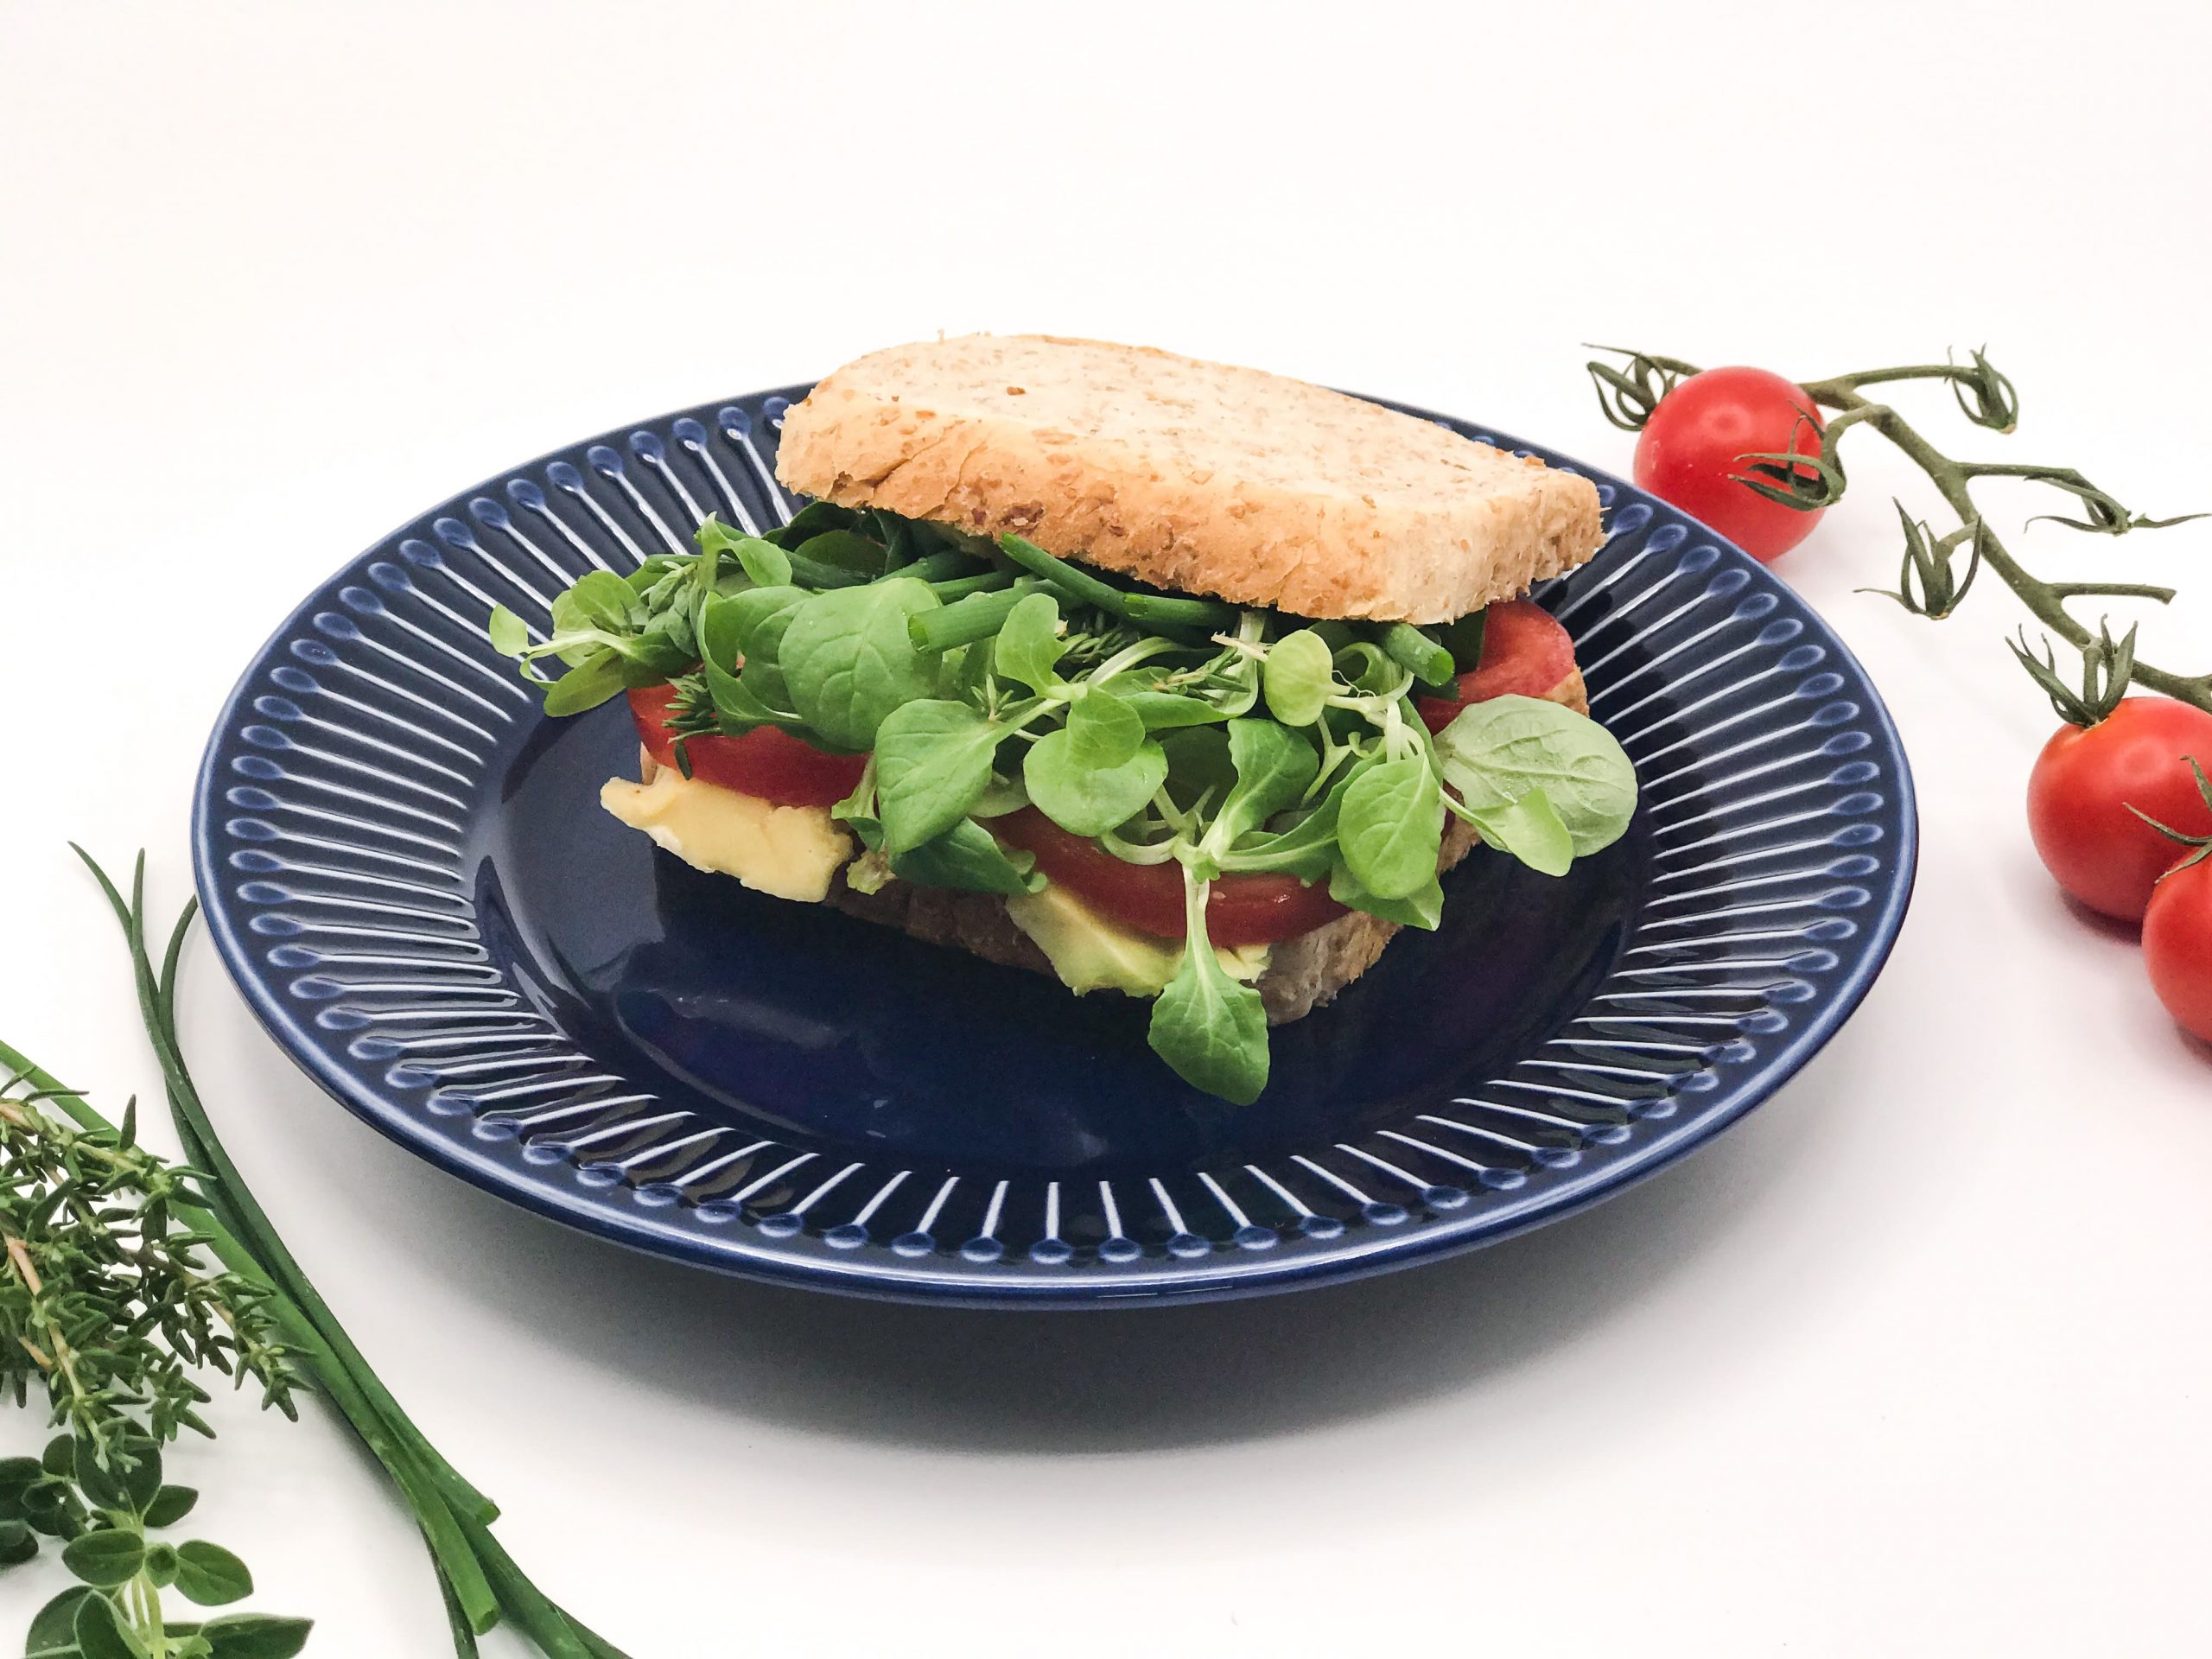 Ein Teller, darauf liegt ein Sandwich, neben Teller ein paar Tomaten am Stiel und ein paar Kräuter.